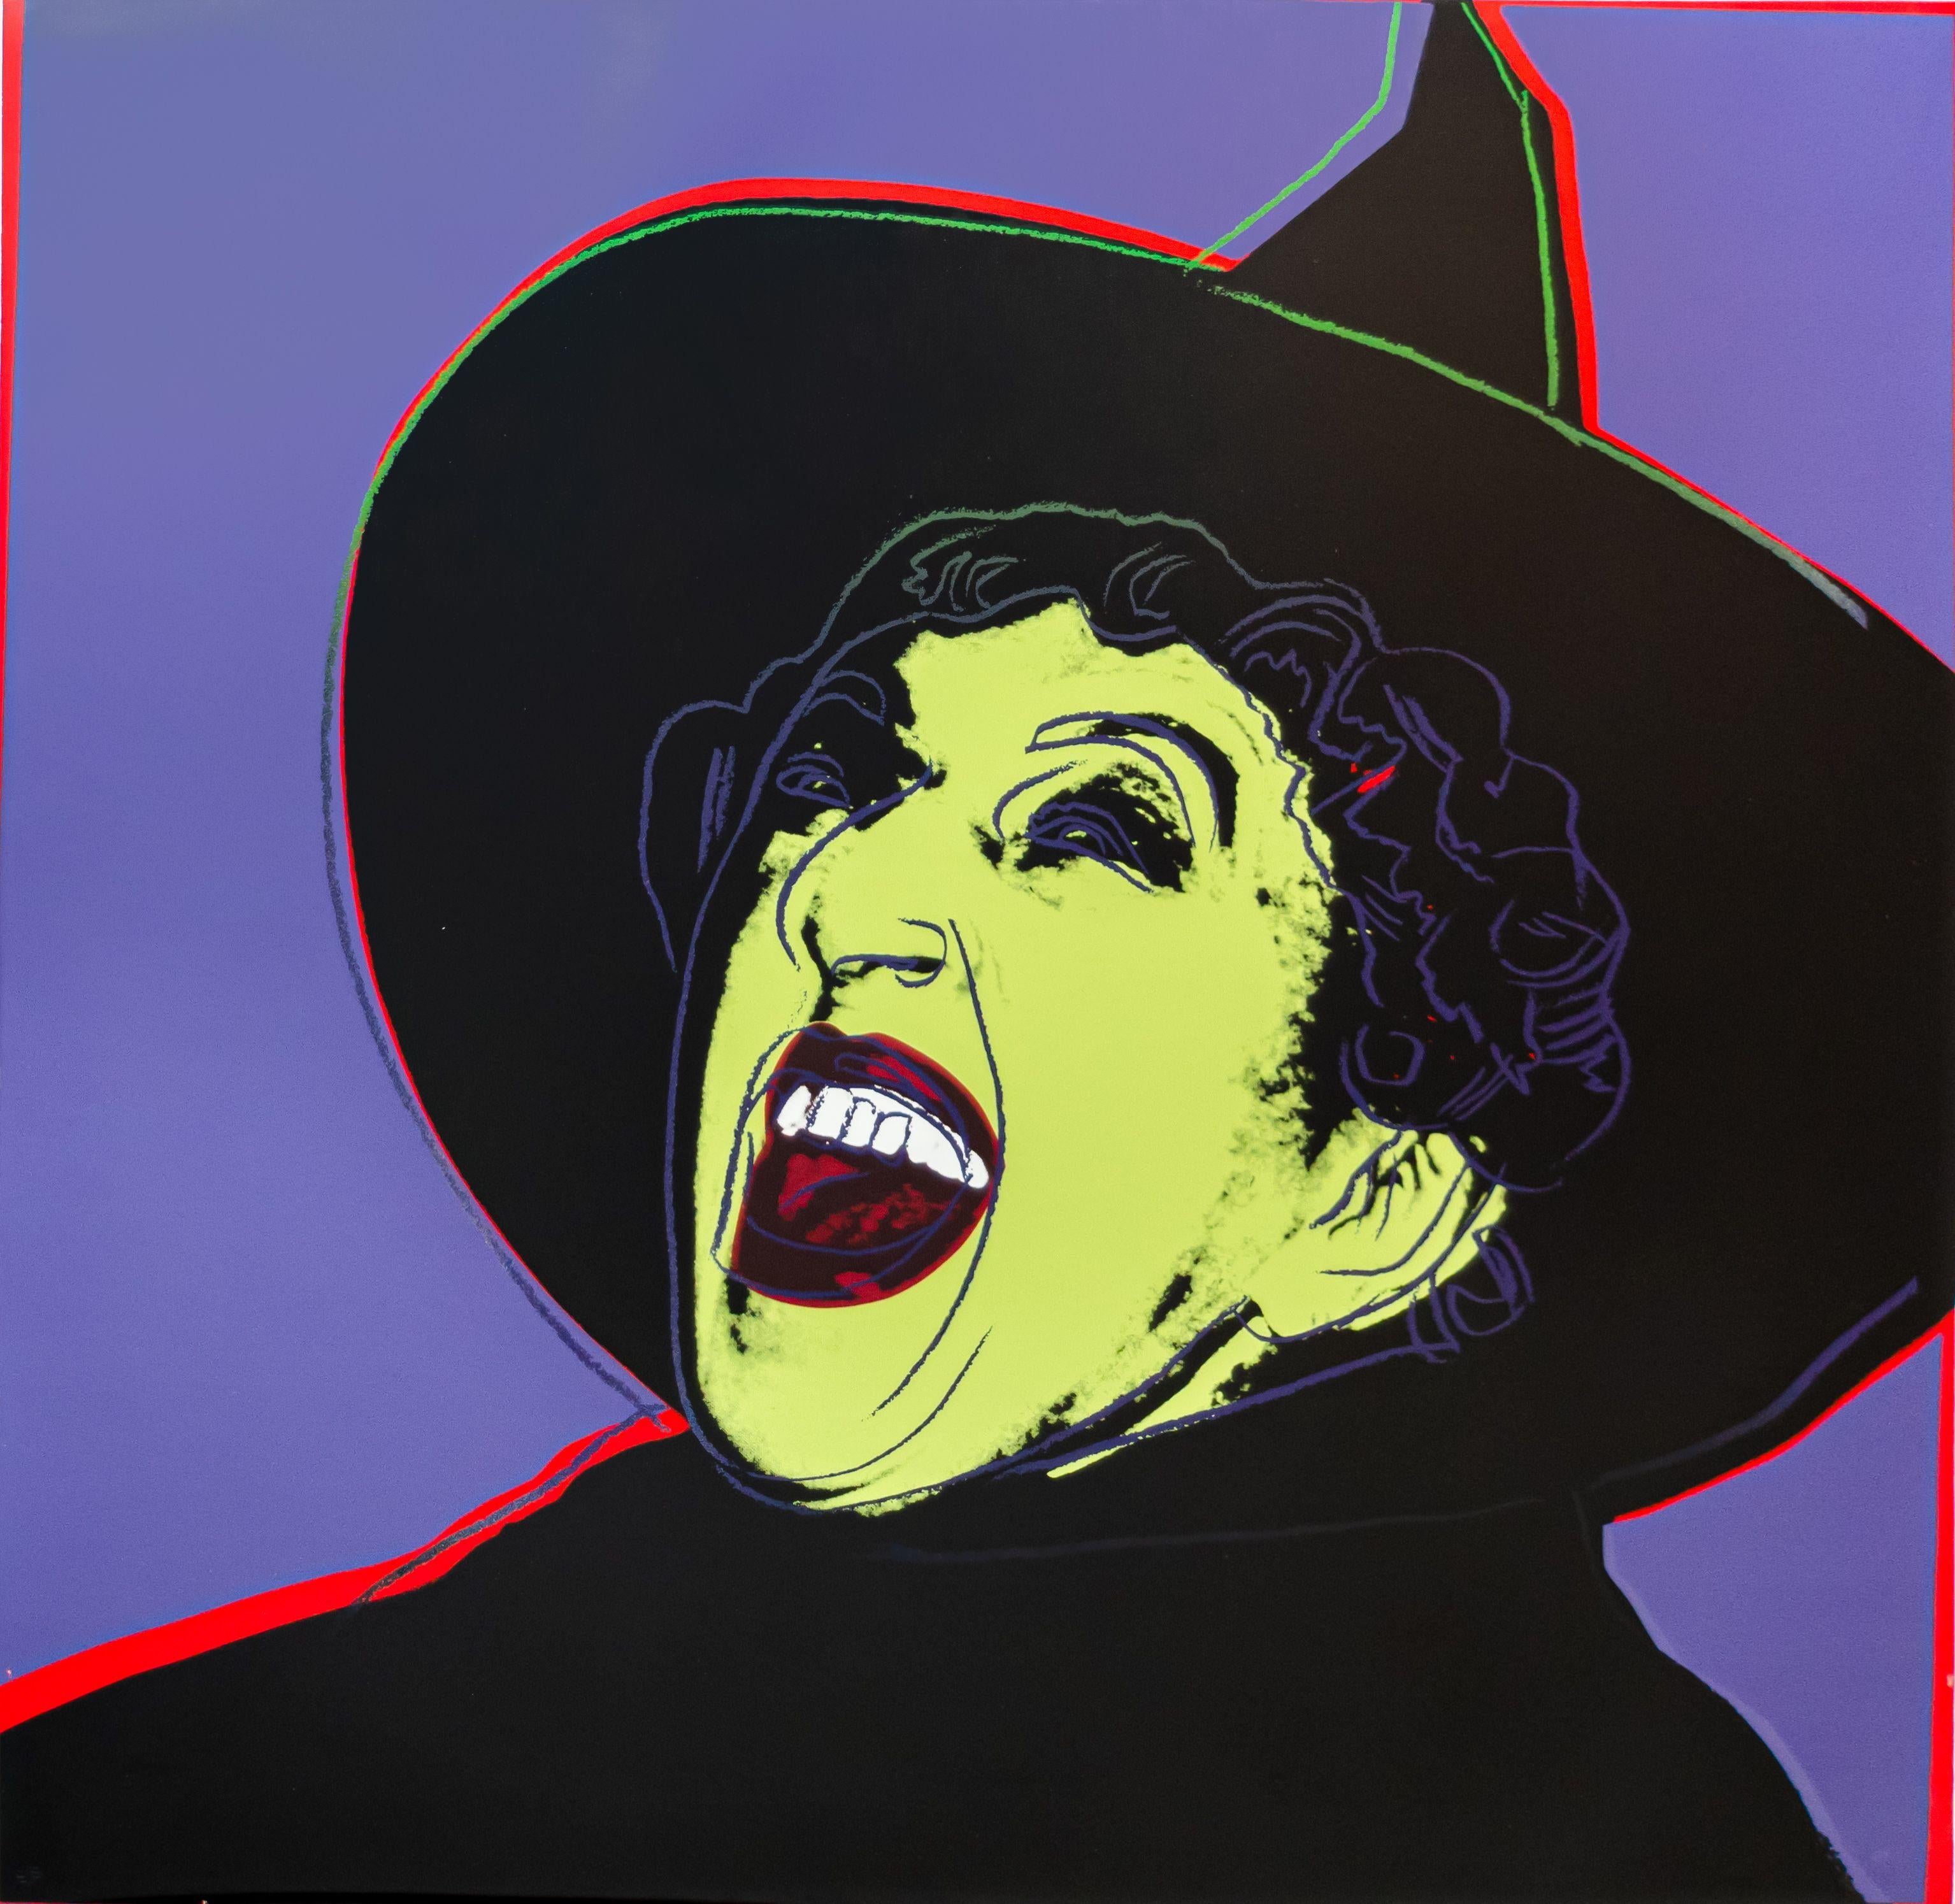 ANDY WARHOL (1928-1987)

Ce tirage de Warhol "Witch" de la série Mythes de Warhol est une sérigraphie en couleurs de 1981 sur Lenox Museum Board. Il s'agit d'un tirage numéroté Ed. 26/200 en couleurs, signé au crayon, de l'édition de 200 (plus 30